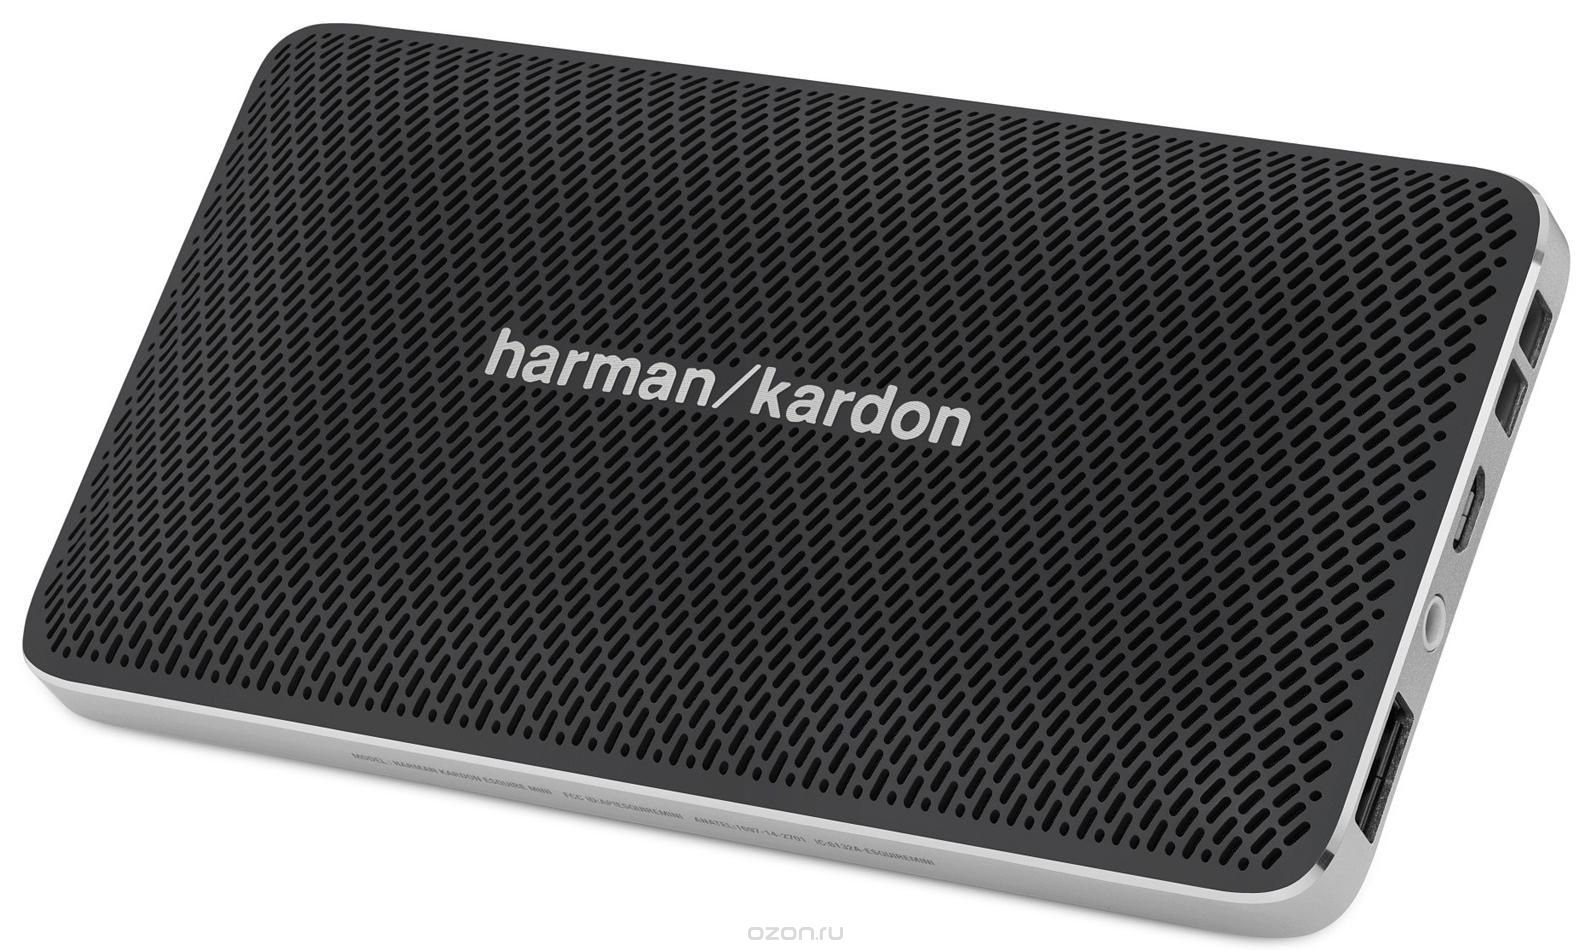 Harman Kardon Esquire Mini Black